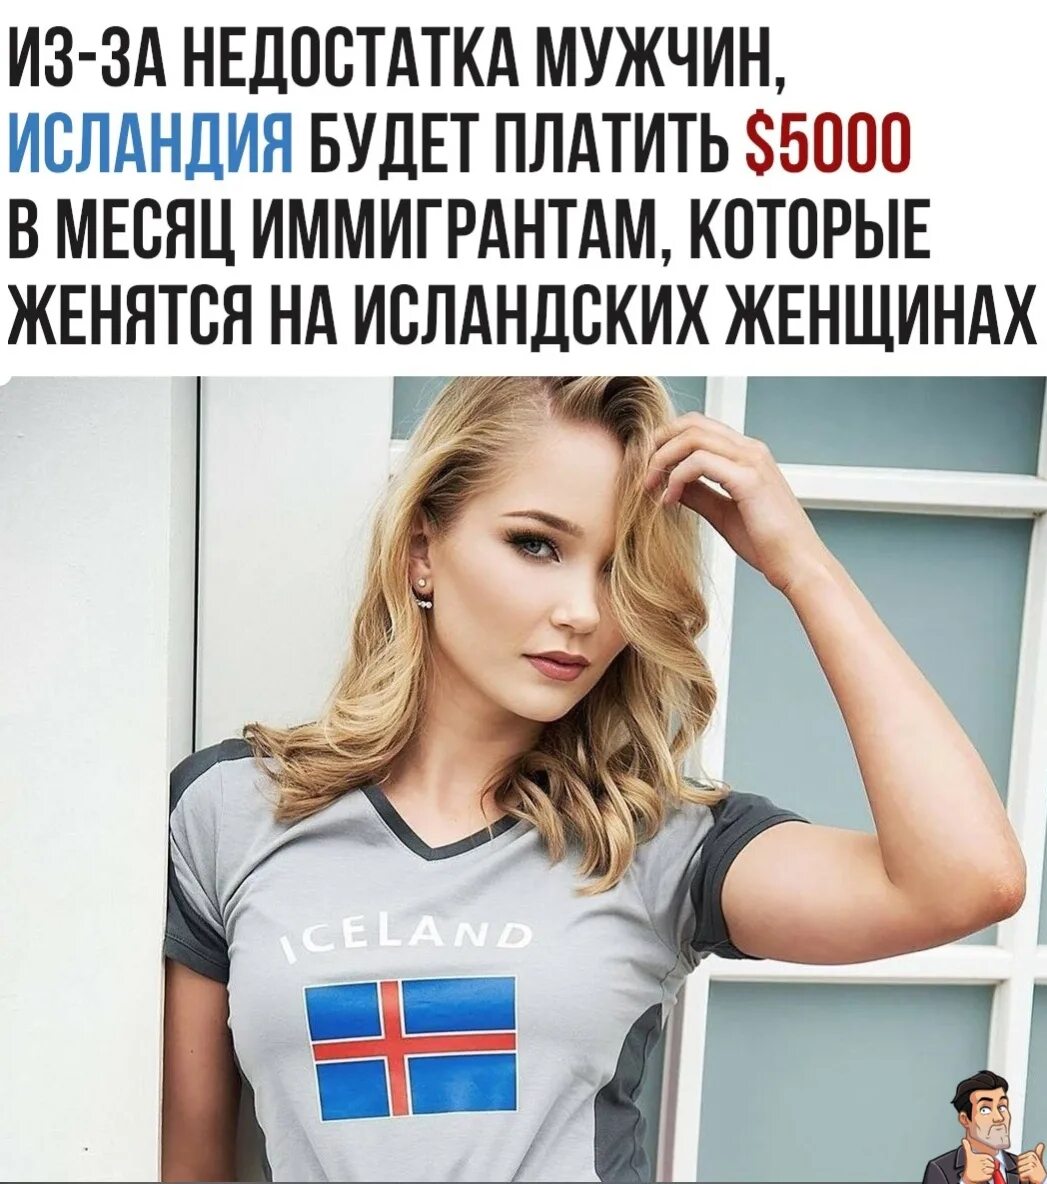 Недостатки быть мужчиной. Исландия женщины. Женщины Исландии нехватка мужчин. Исландские женщины платят мужчинам. Исландия нехватка мужчин.